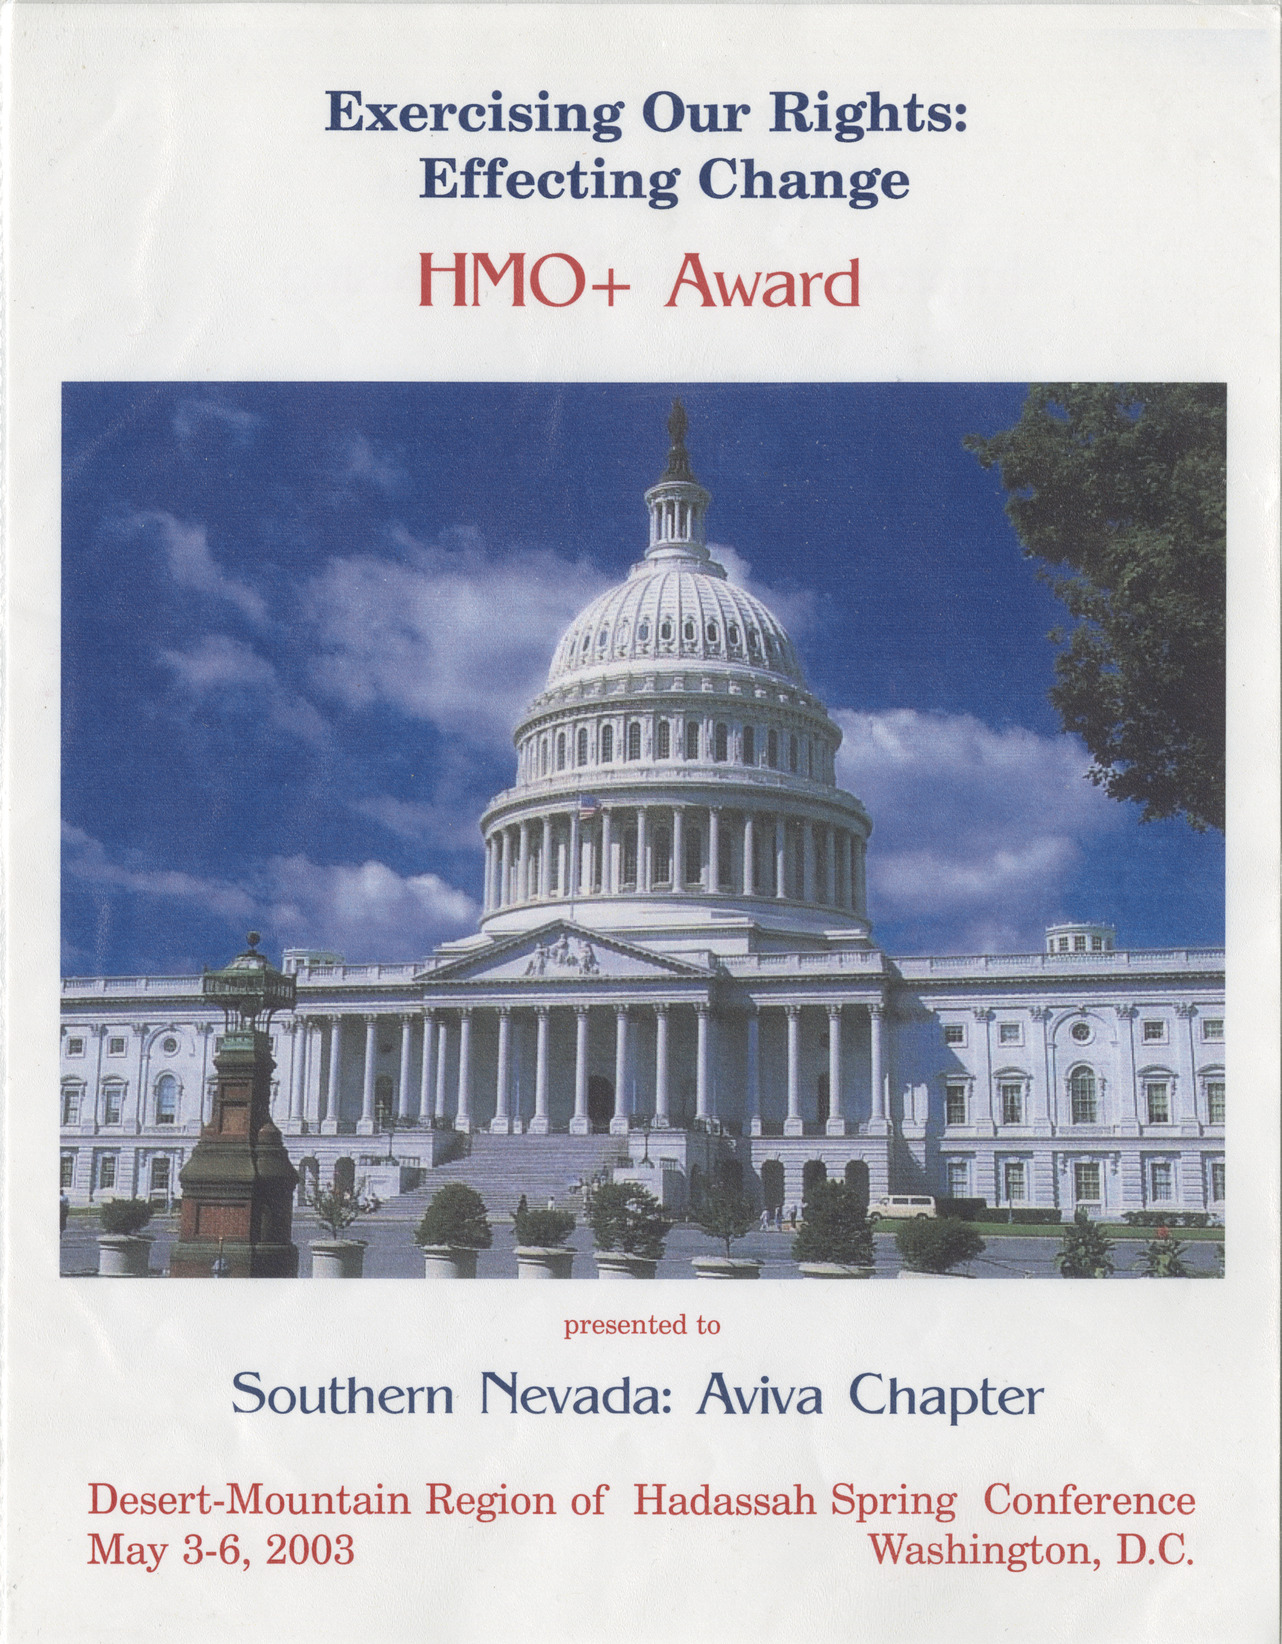 HMO+ award for Southern Nevada Aviva Chapter, May 2003